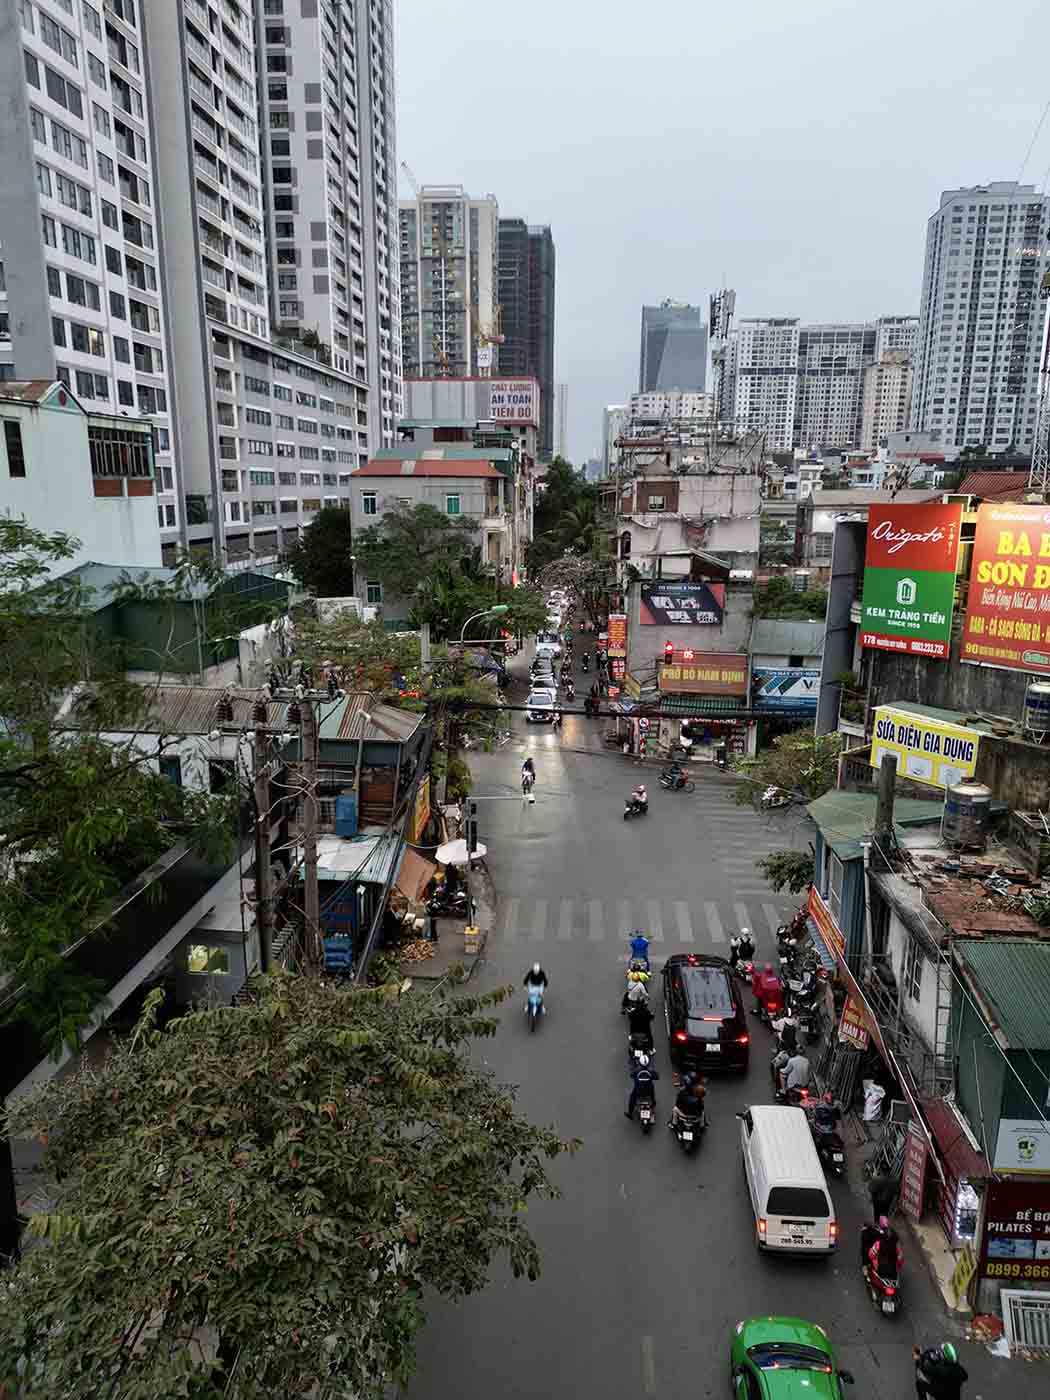 Sau khi hoàn thiện, dự án được kỳ vọng giảm tải ùn tắc giao thông, đem lại cảnh quan đô thị cũng như tạo đà, phát triển kinh tế - xã hội trên địa bàn quận Thanh Xuân. 